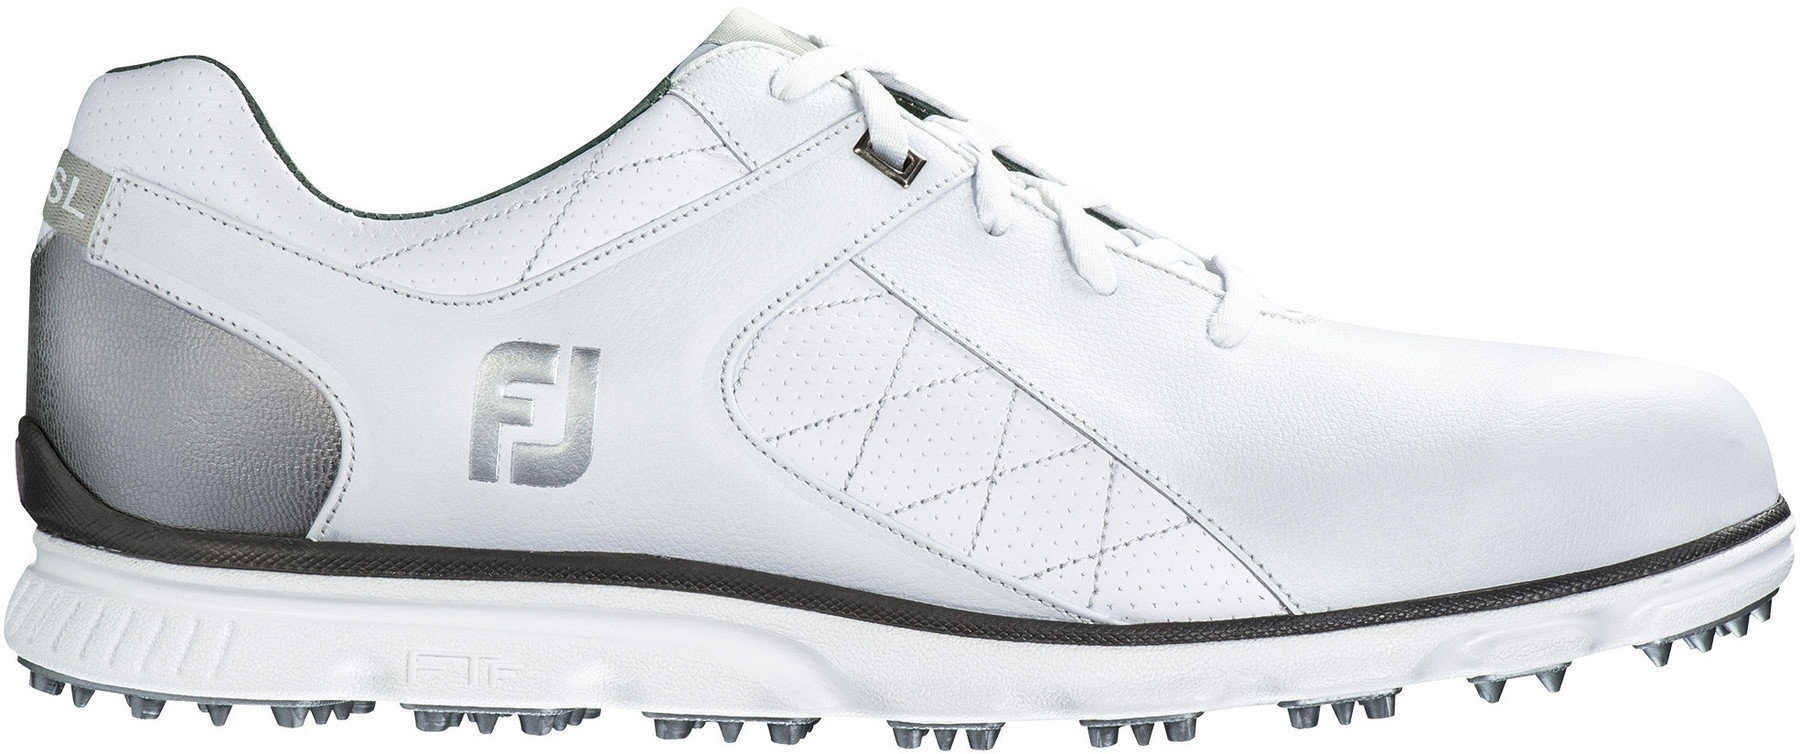 Golfsko til mænd Footjoy Pro SL Mens Golf Shoes White/Silver US 9